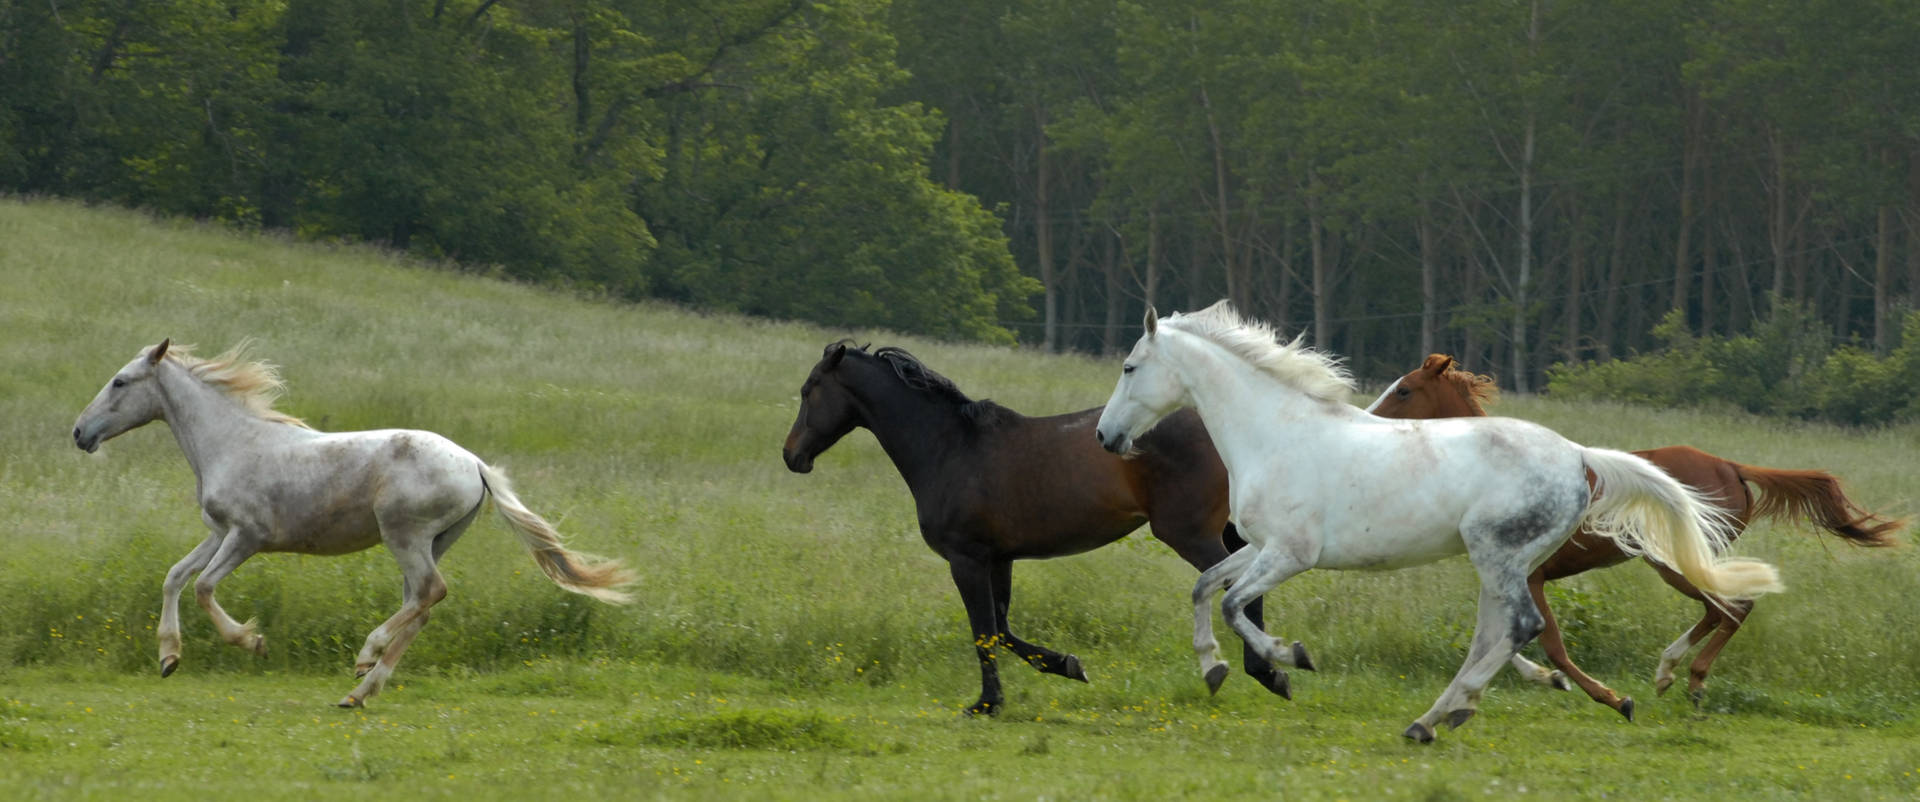 Beautiful Horses Running Free Outdoors